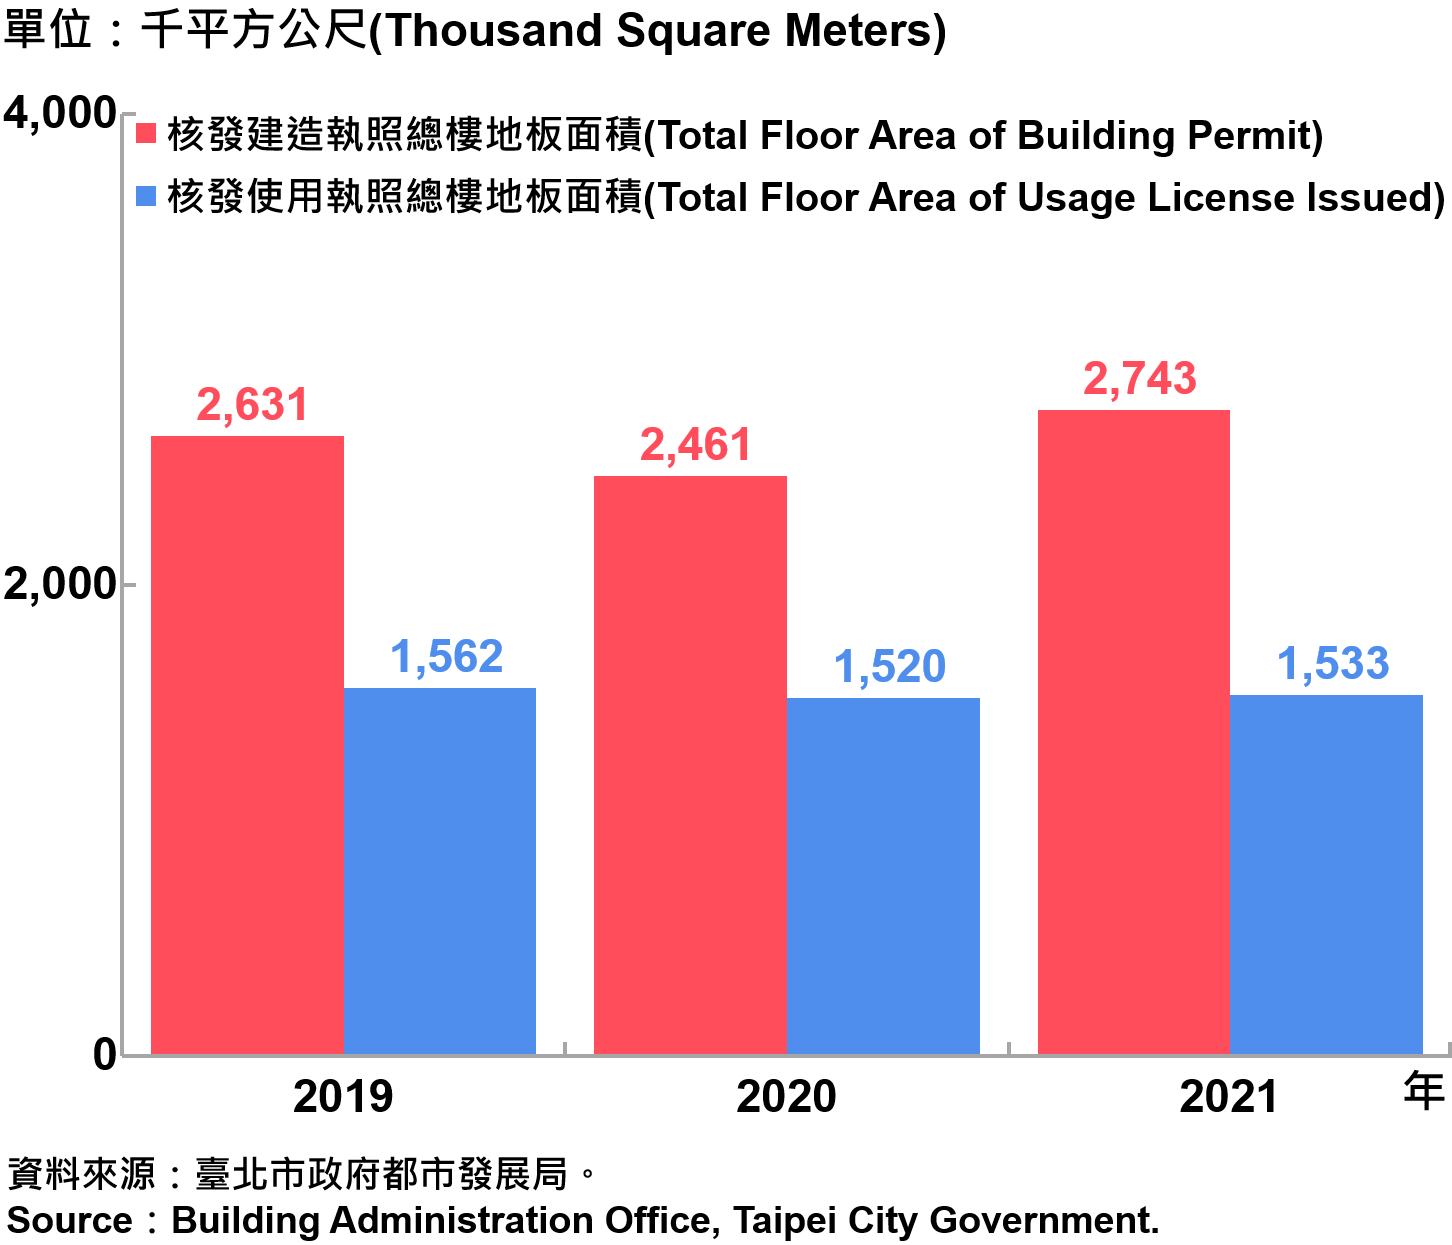 臺北市核發建築物執照與使用執照總樓地板面積—2021 Total Floor Area of Building Permit and Usage License Issued in Taipei City—2021